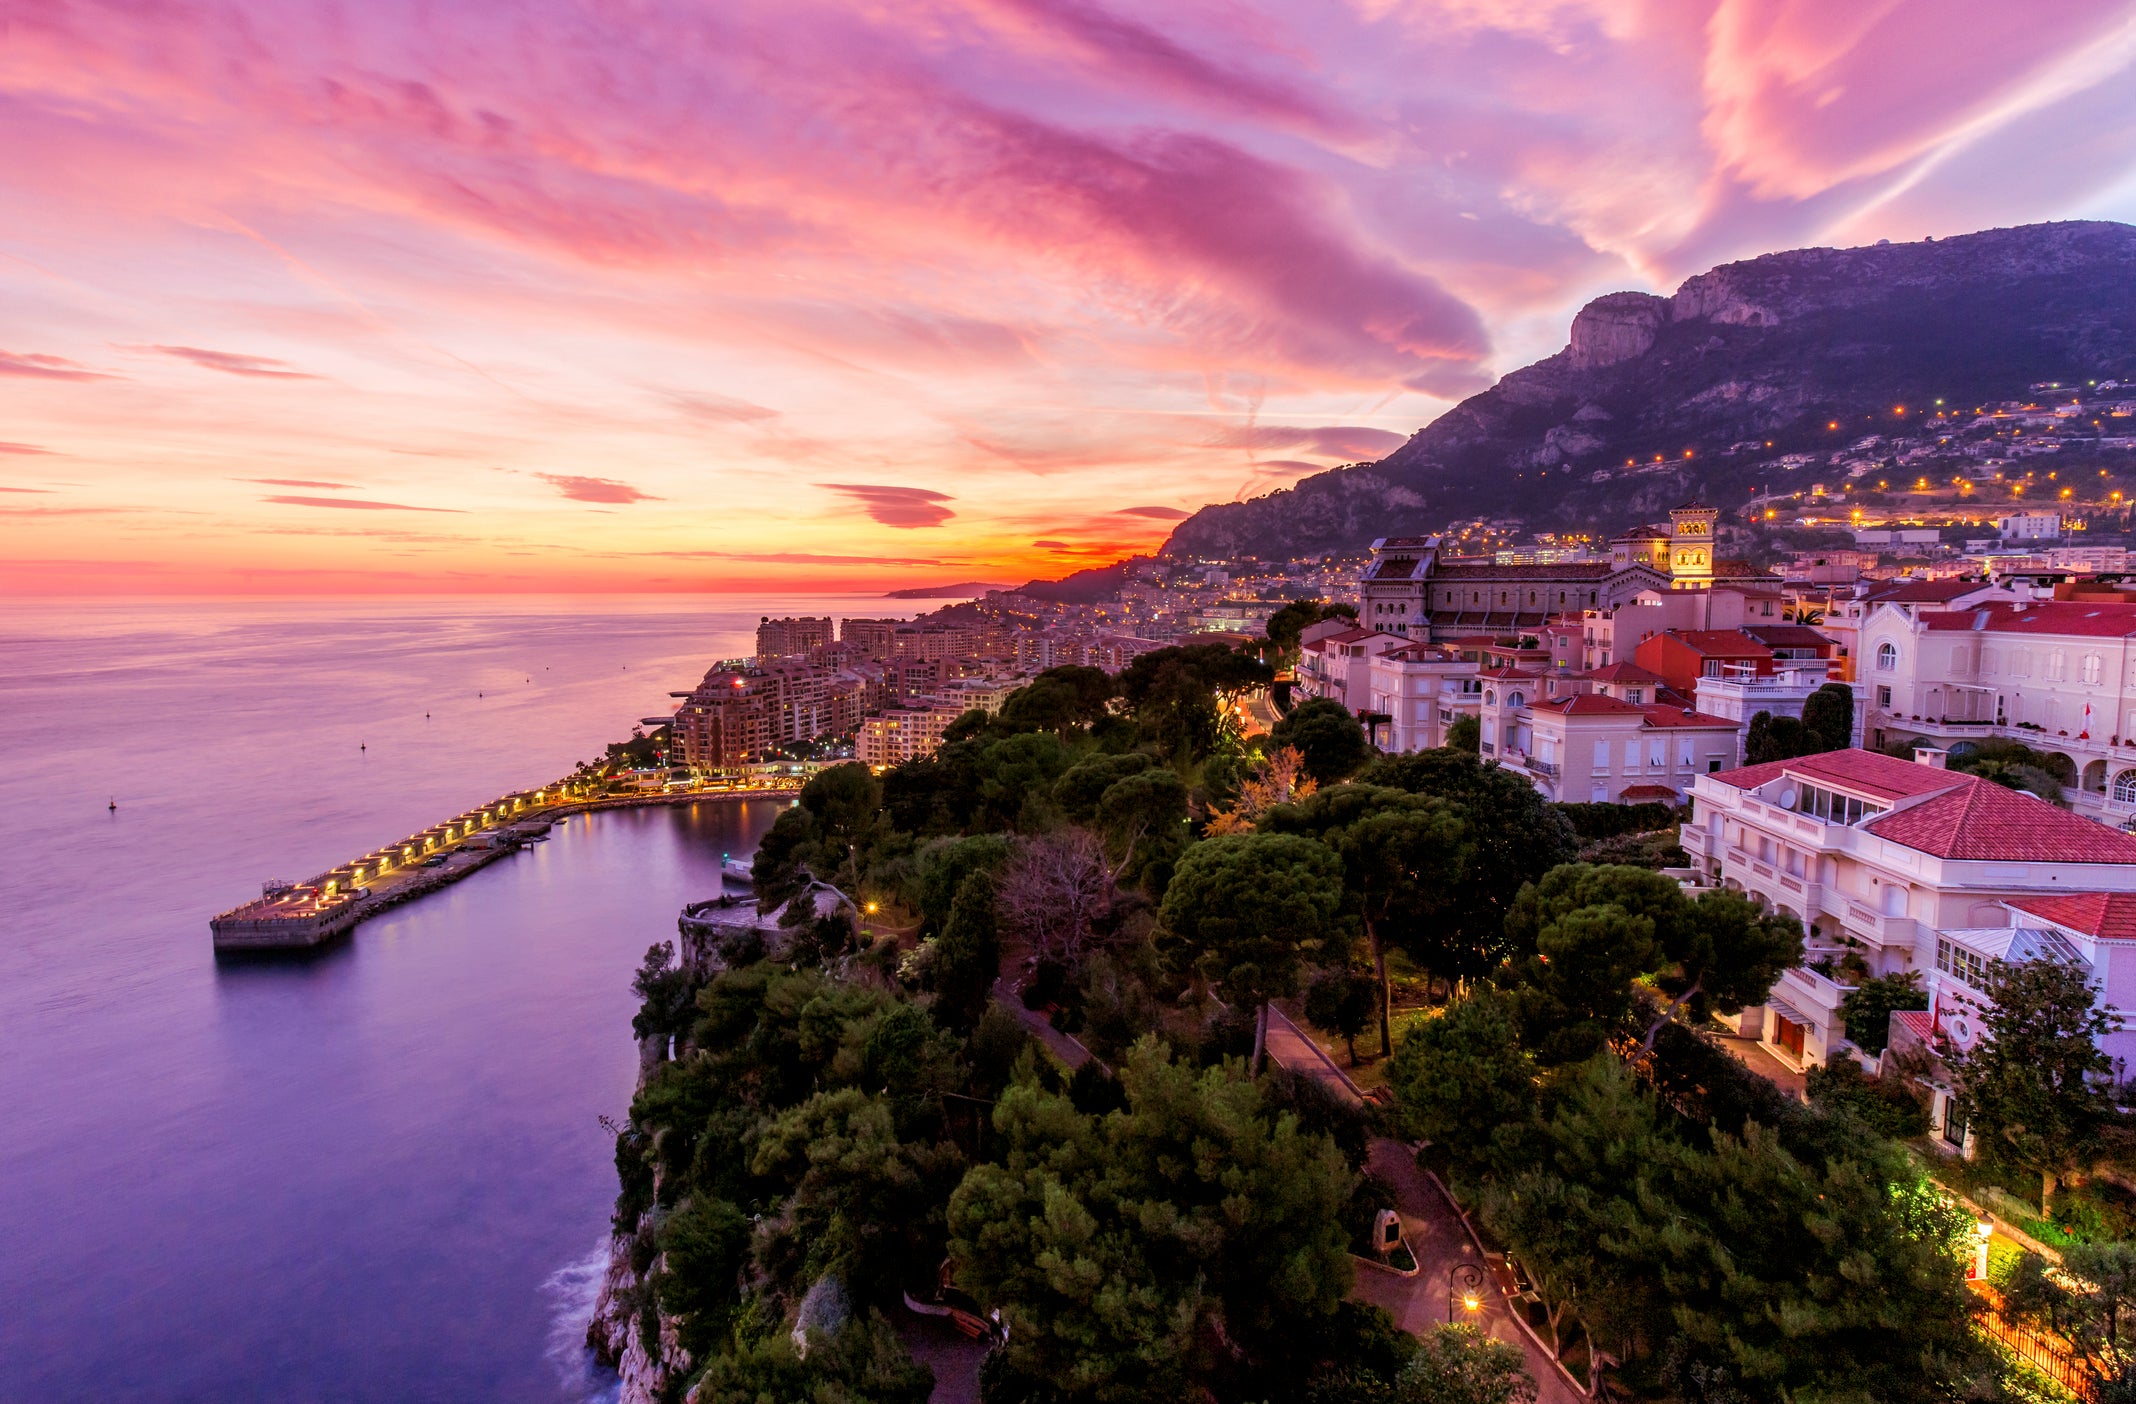 Monaco, Monte Carlo at dusk